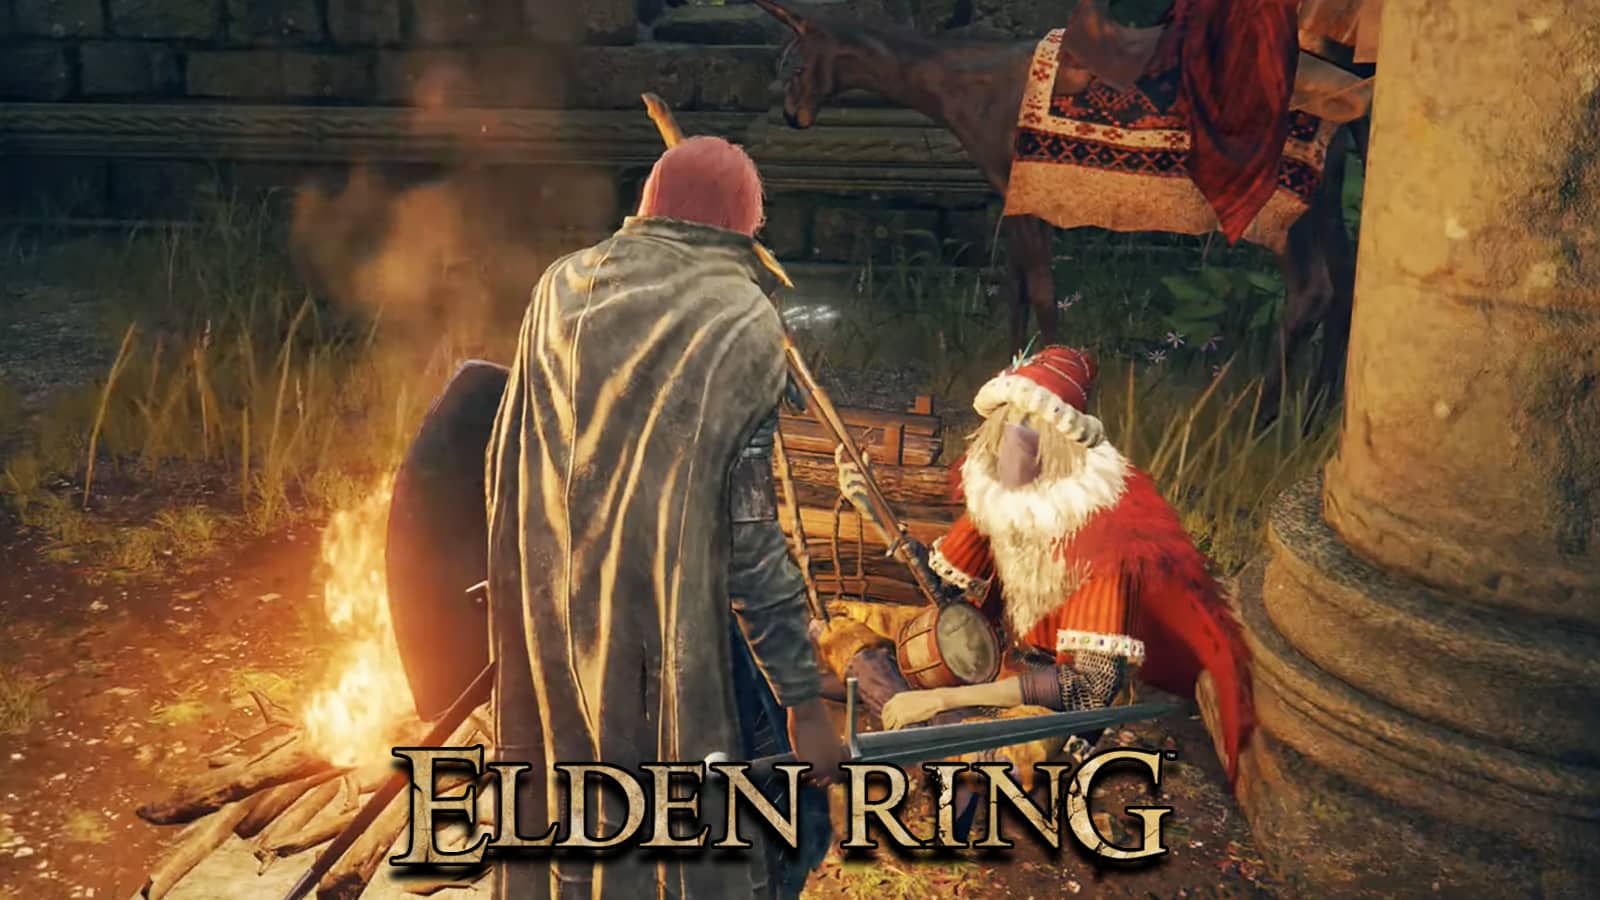 Elden Ring character holding Sword in front of Merchant Kale screenshot.